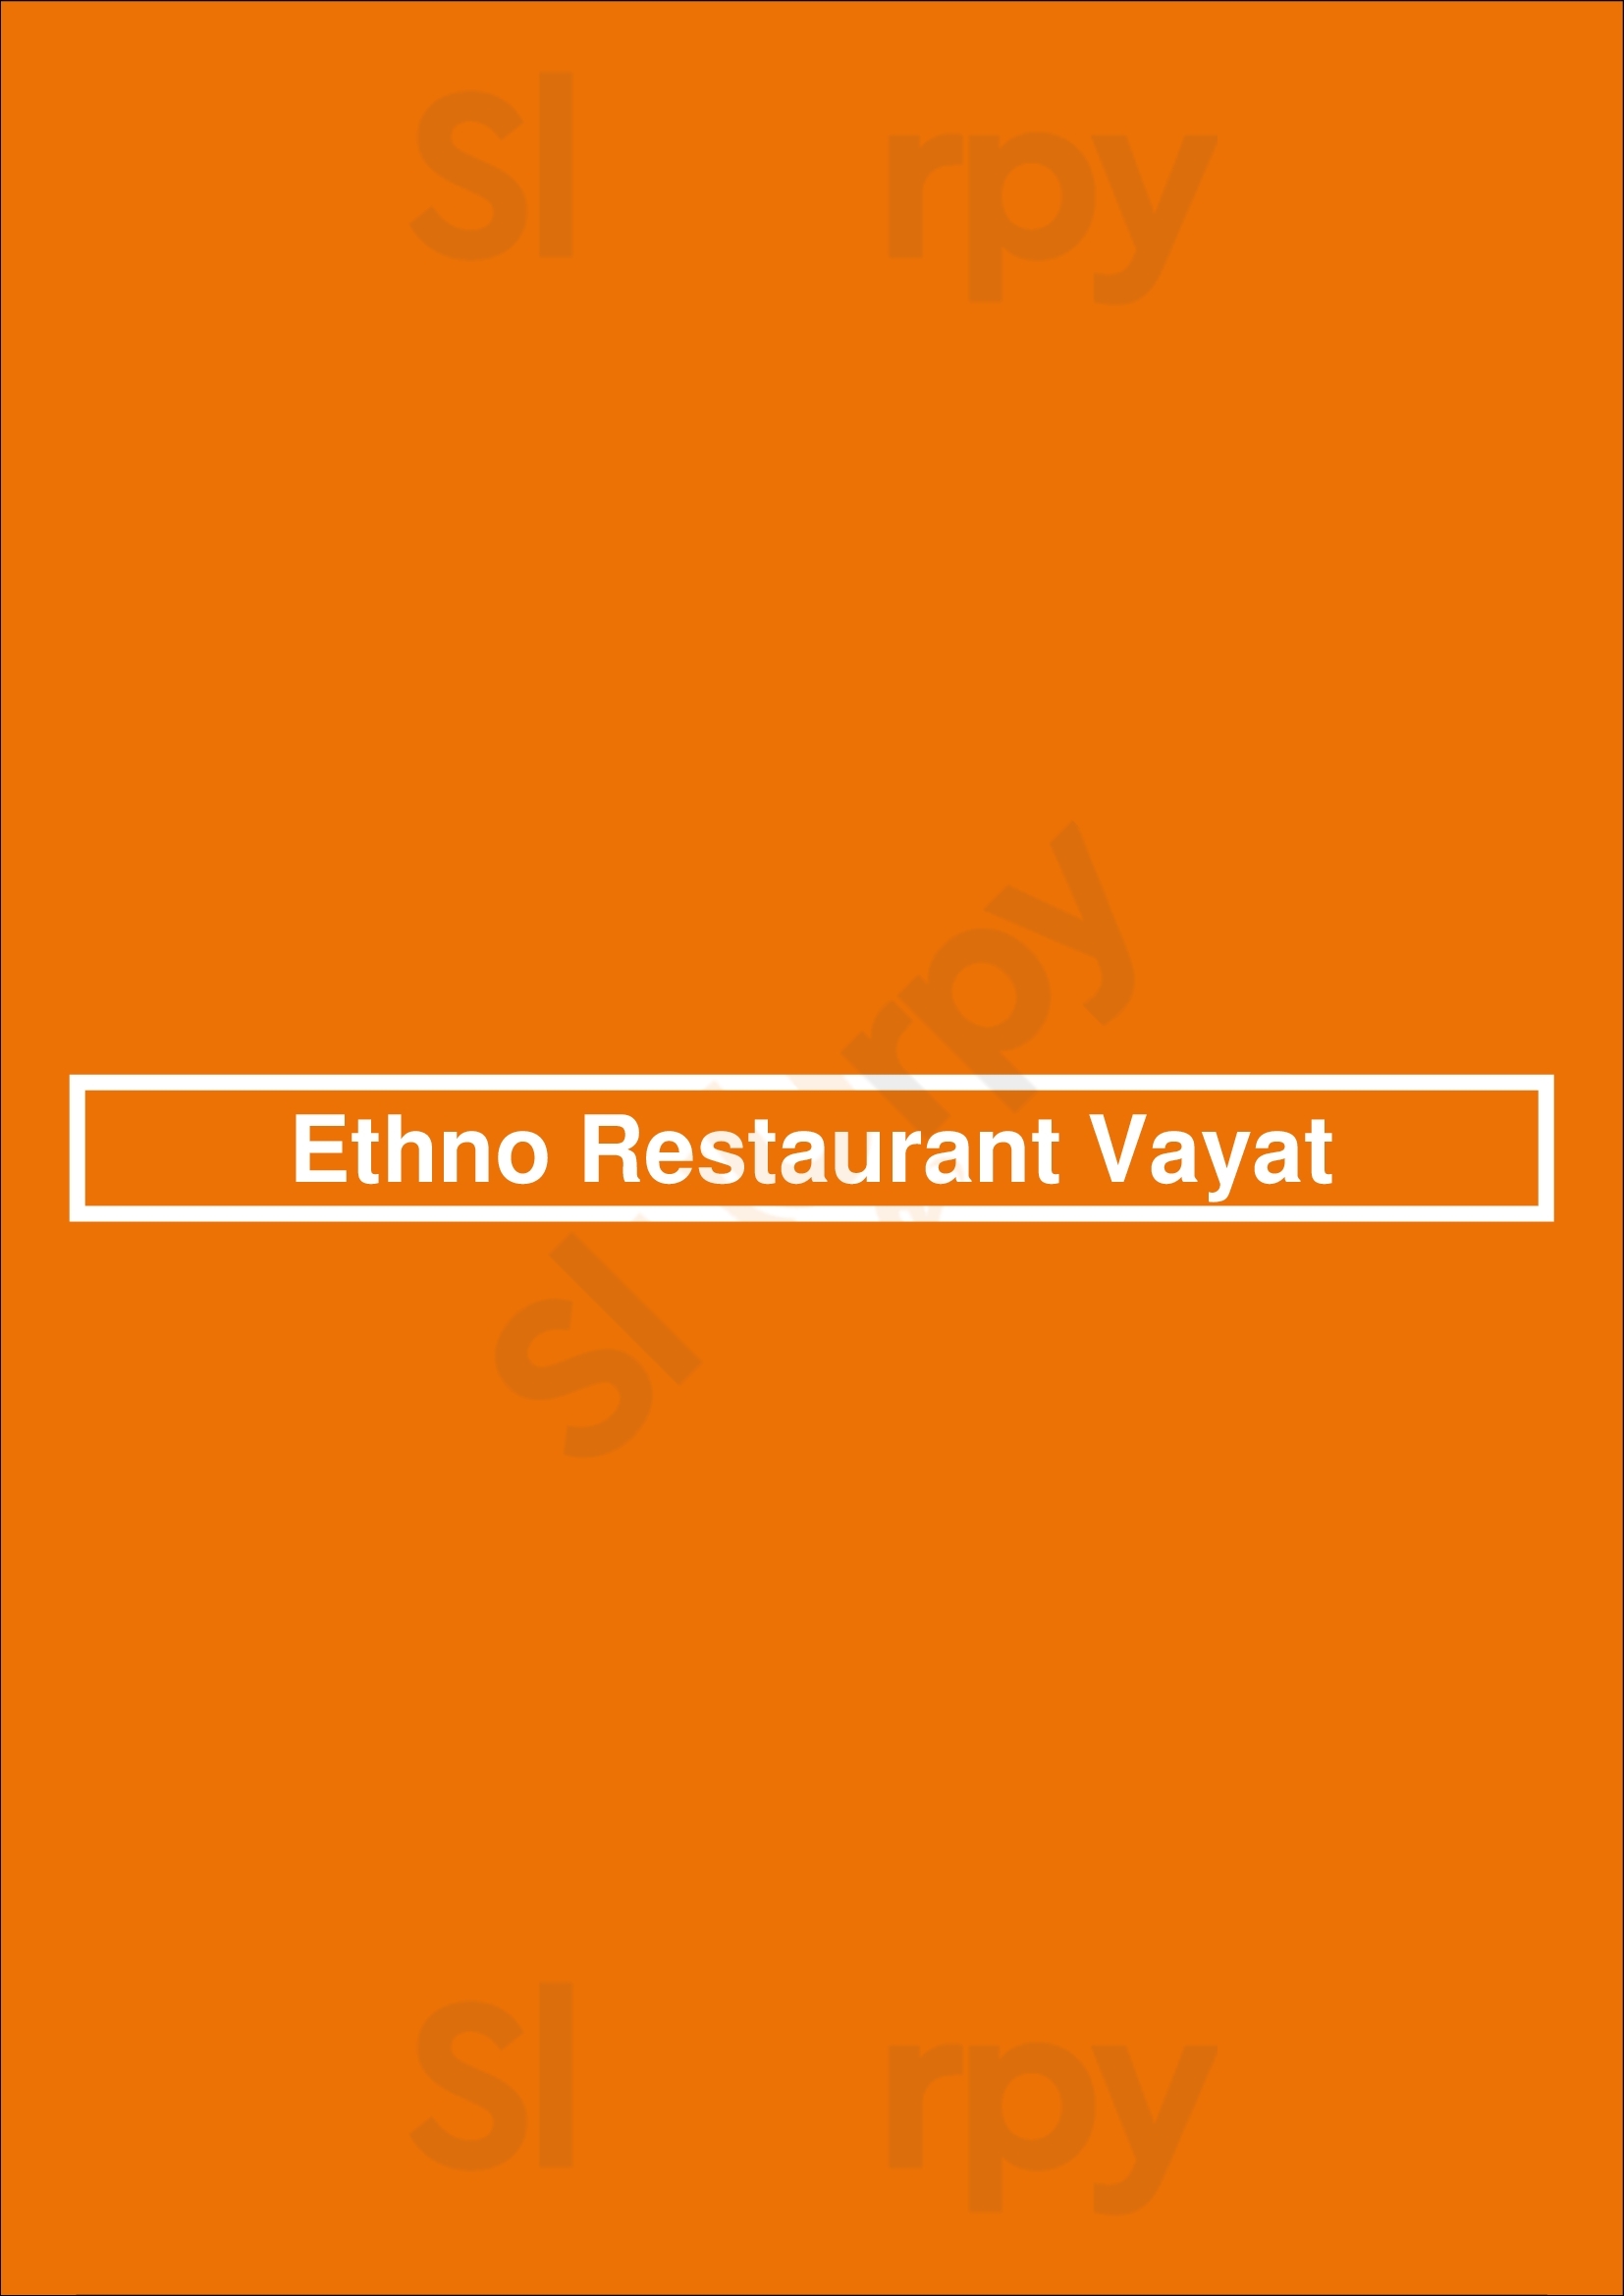 Ethno Restaurant Vayat Coquitlam Menu - 1